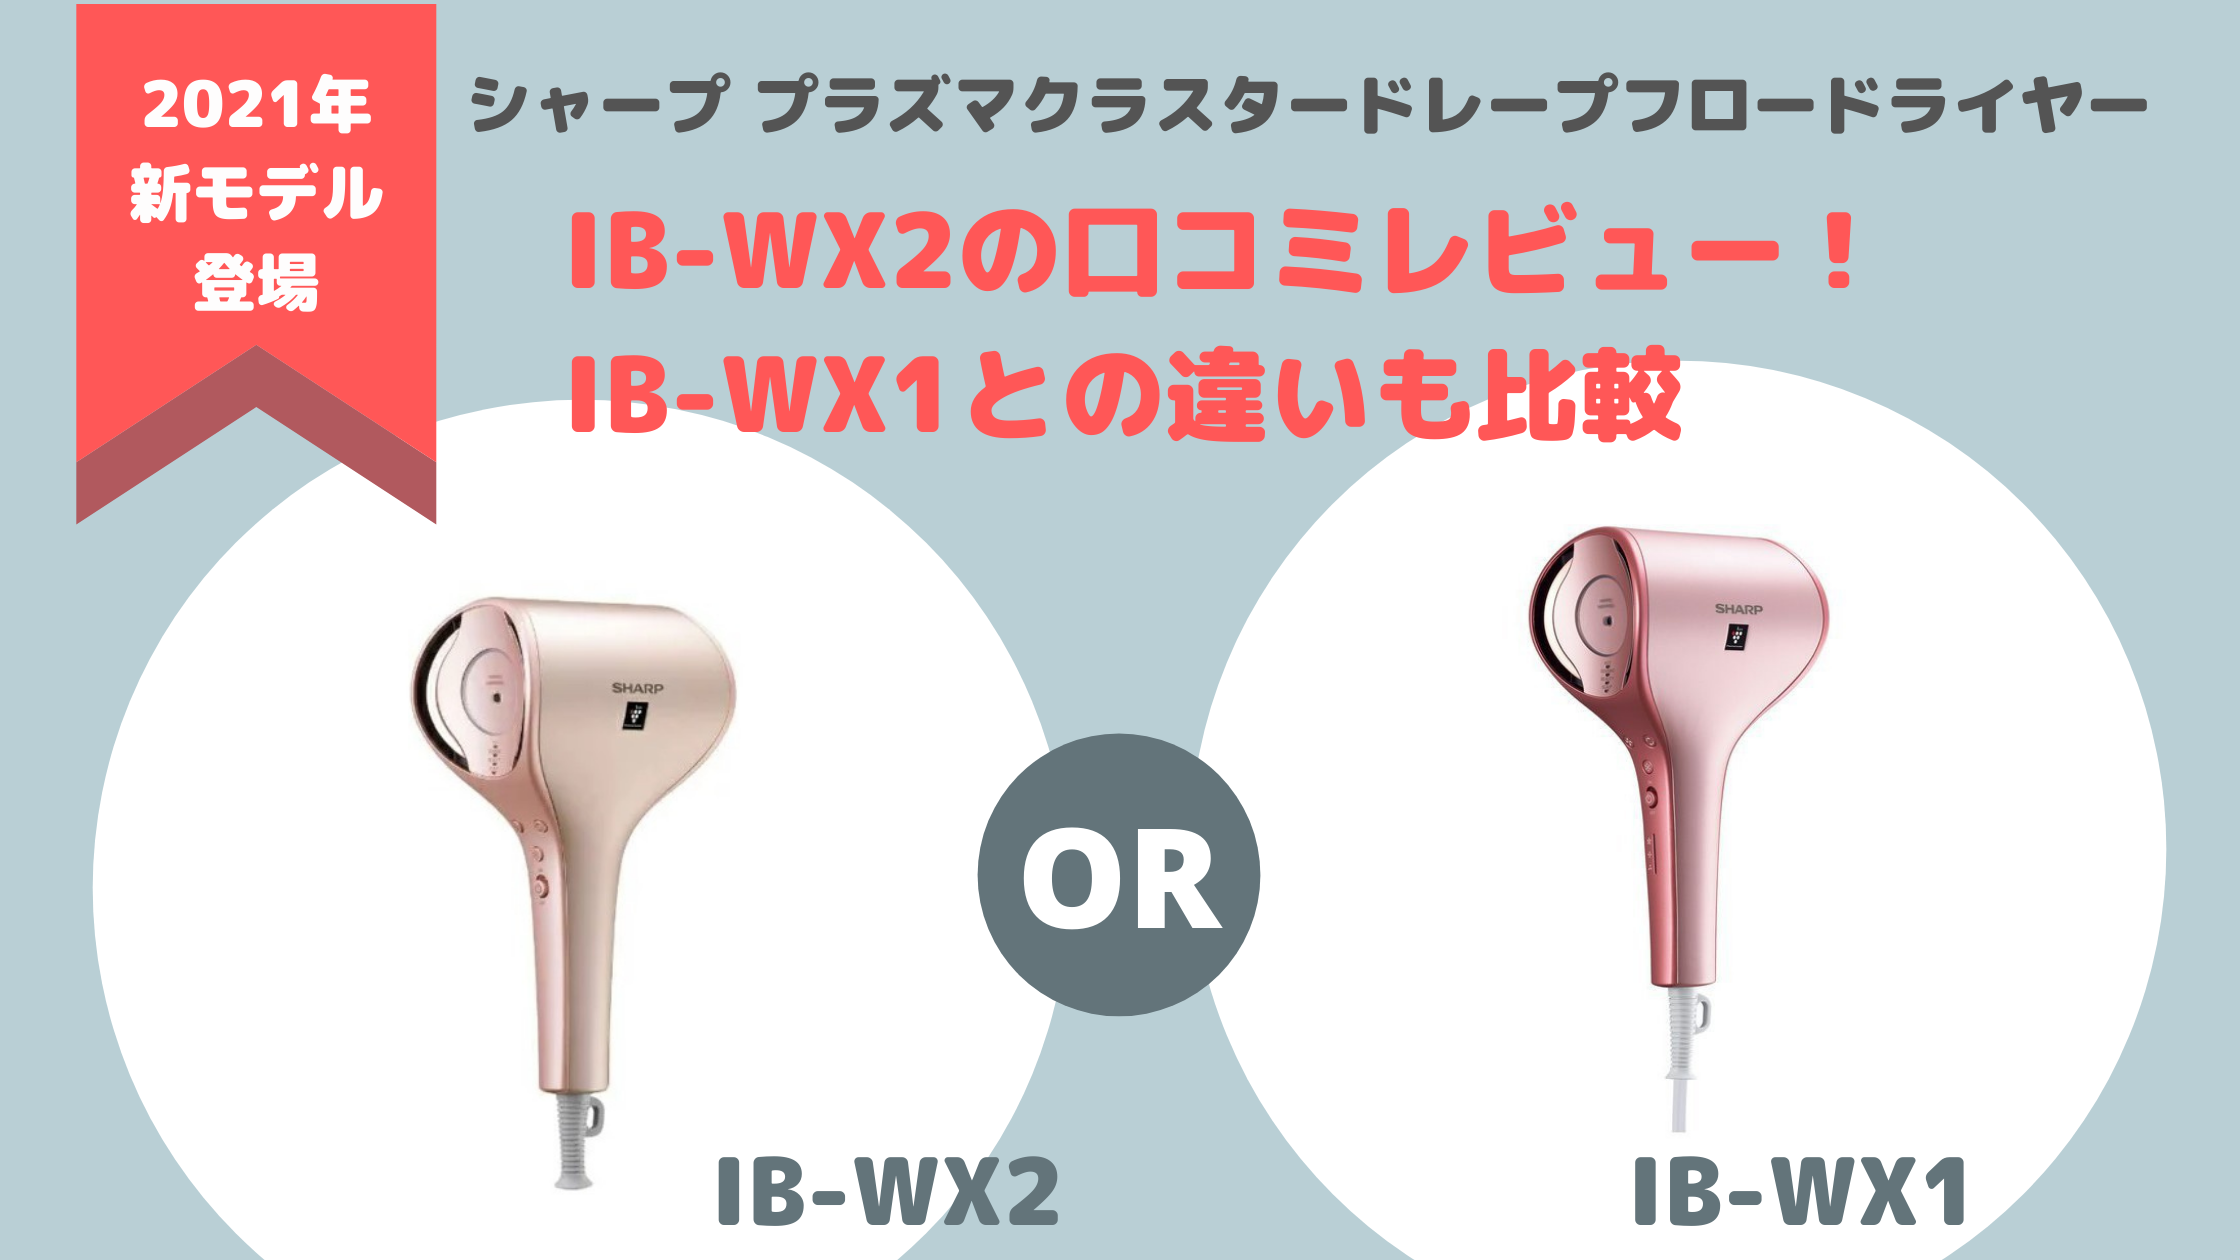 IB-WX2